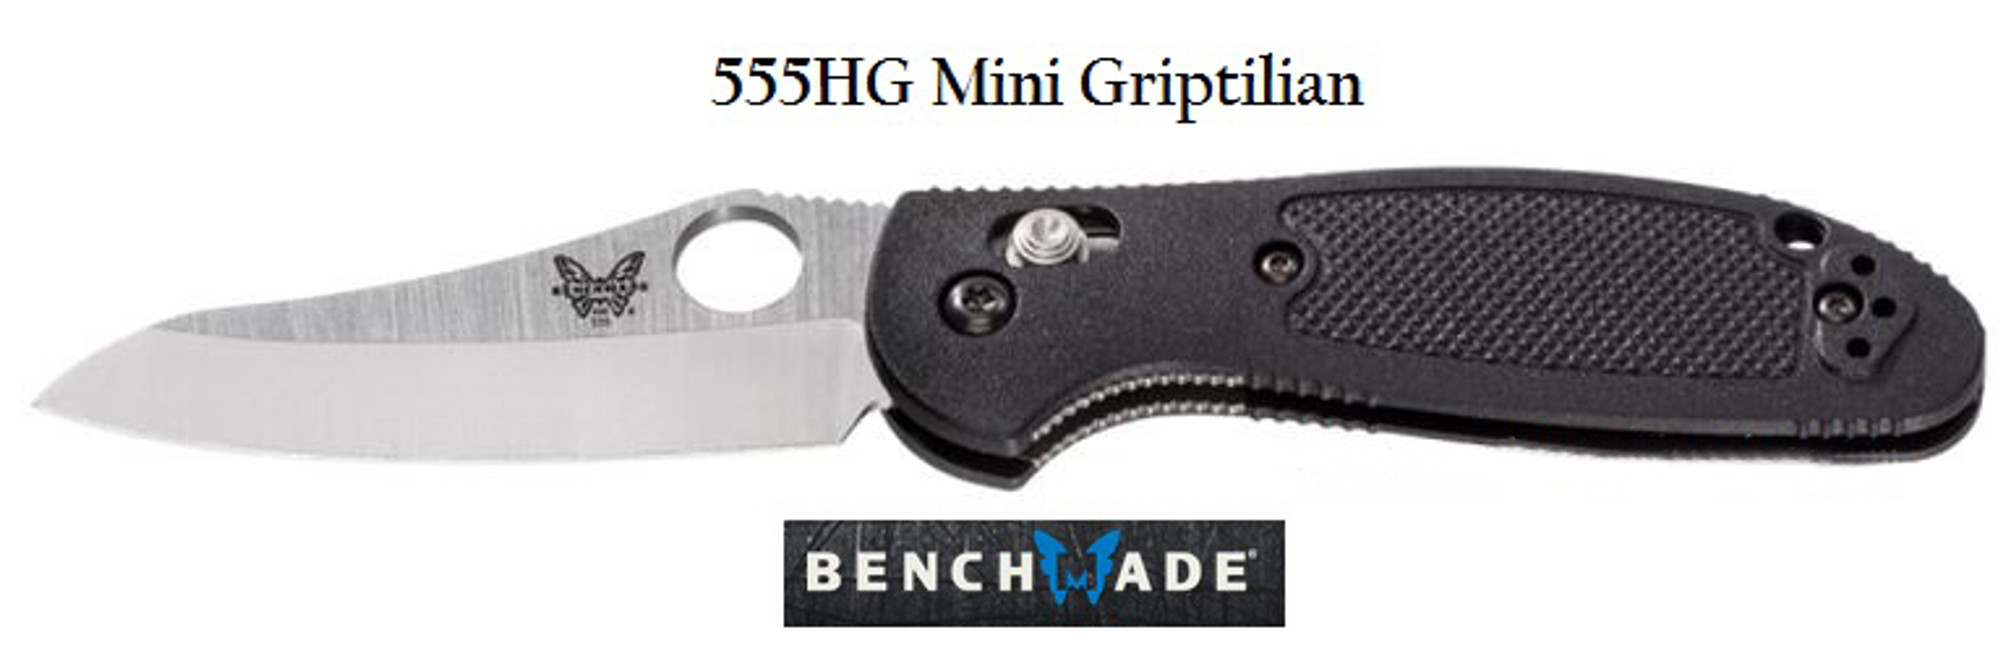 Benchmade 555HG Griptilian Mini Plain Edge